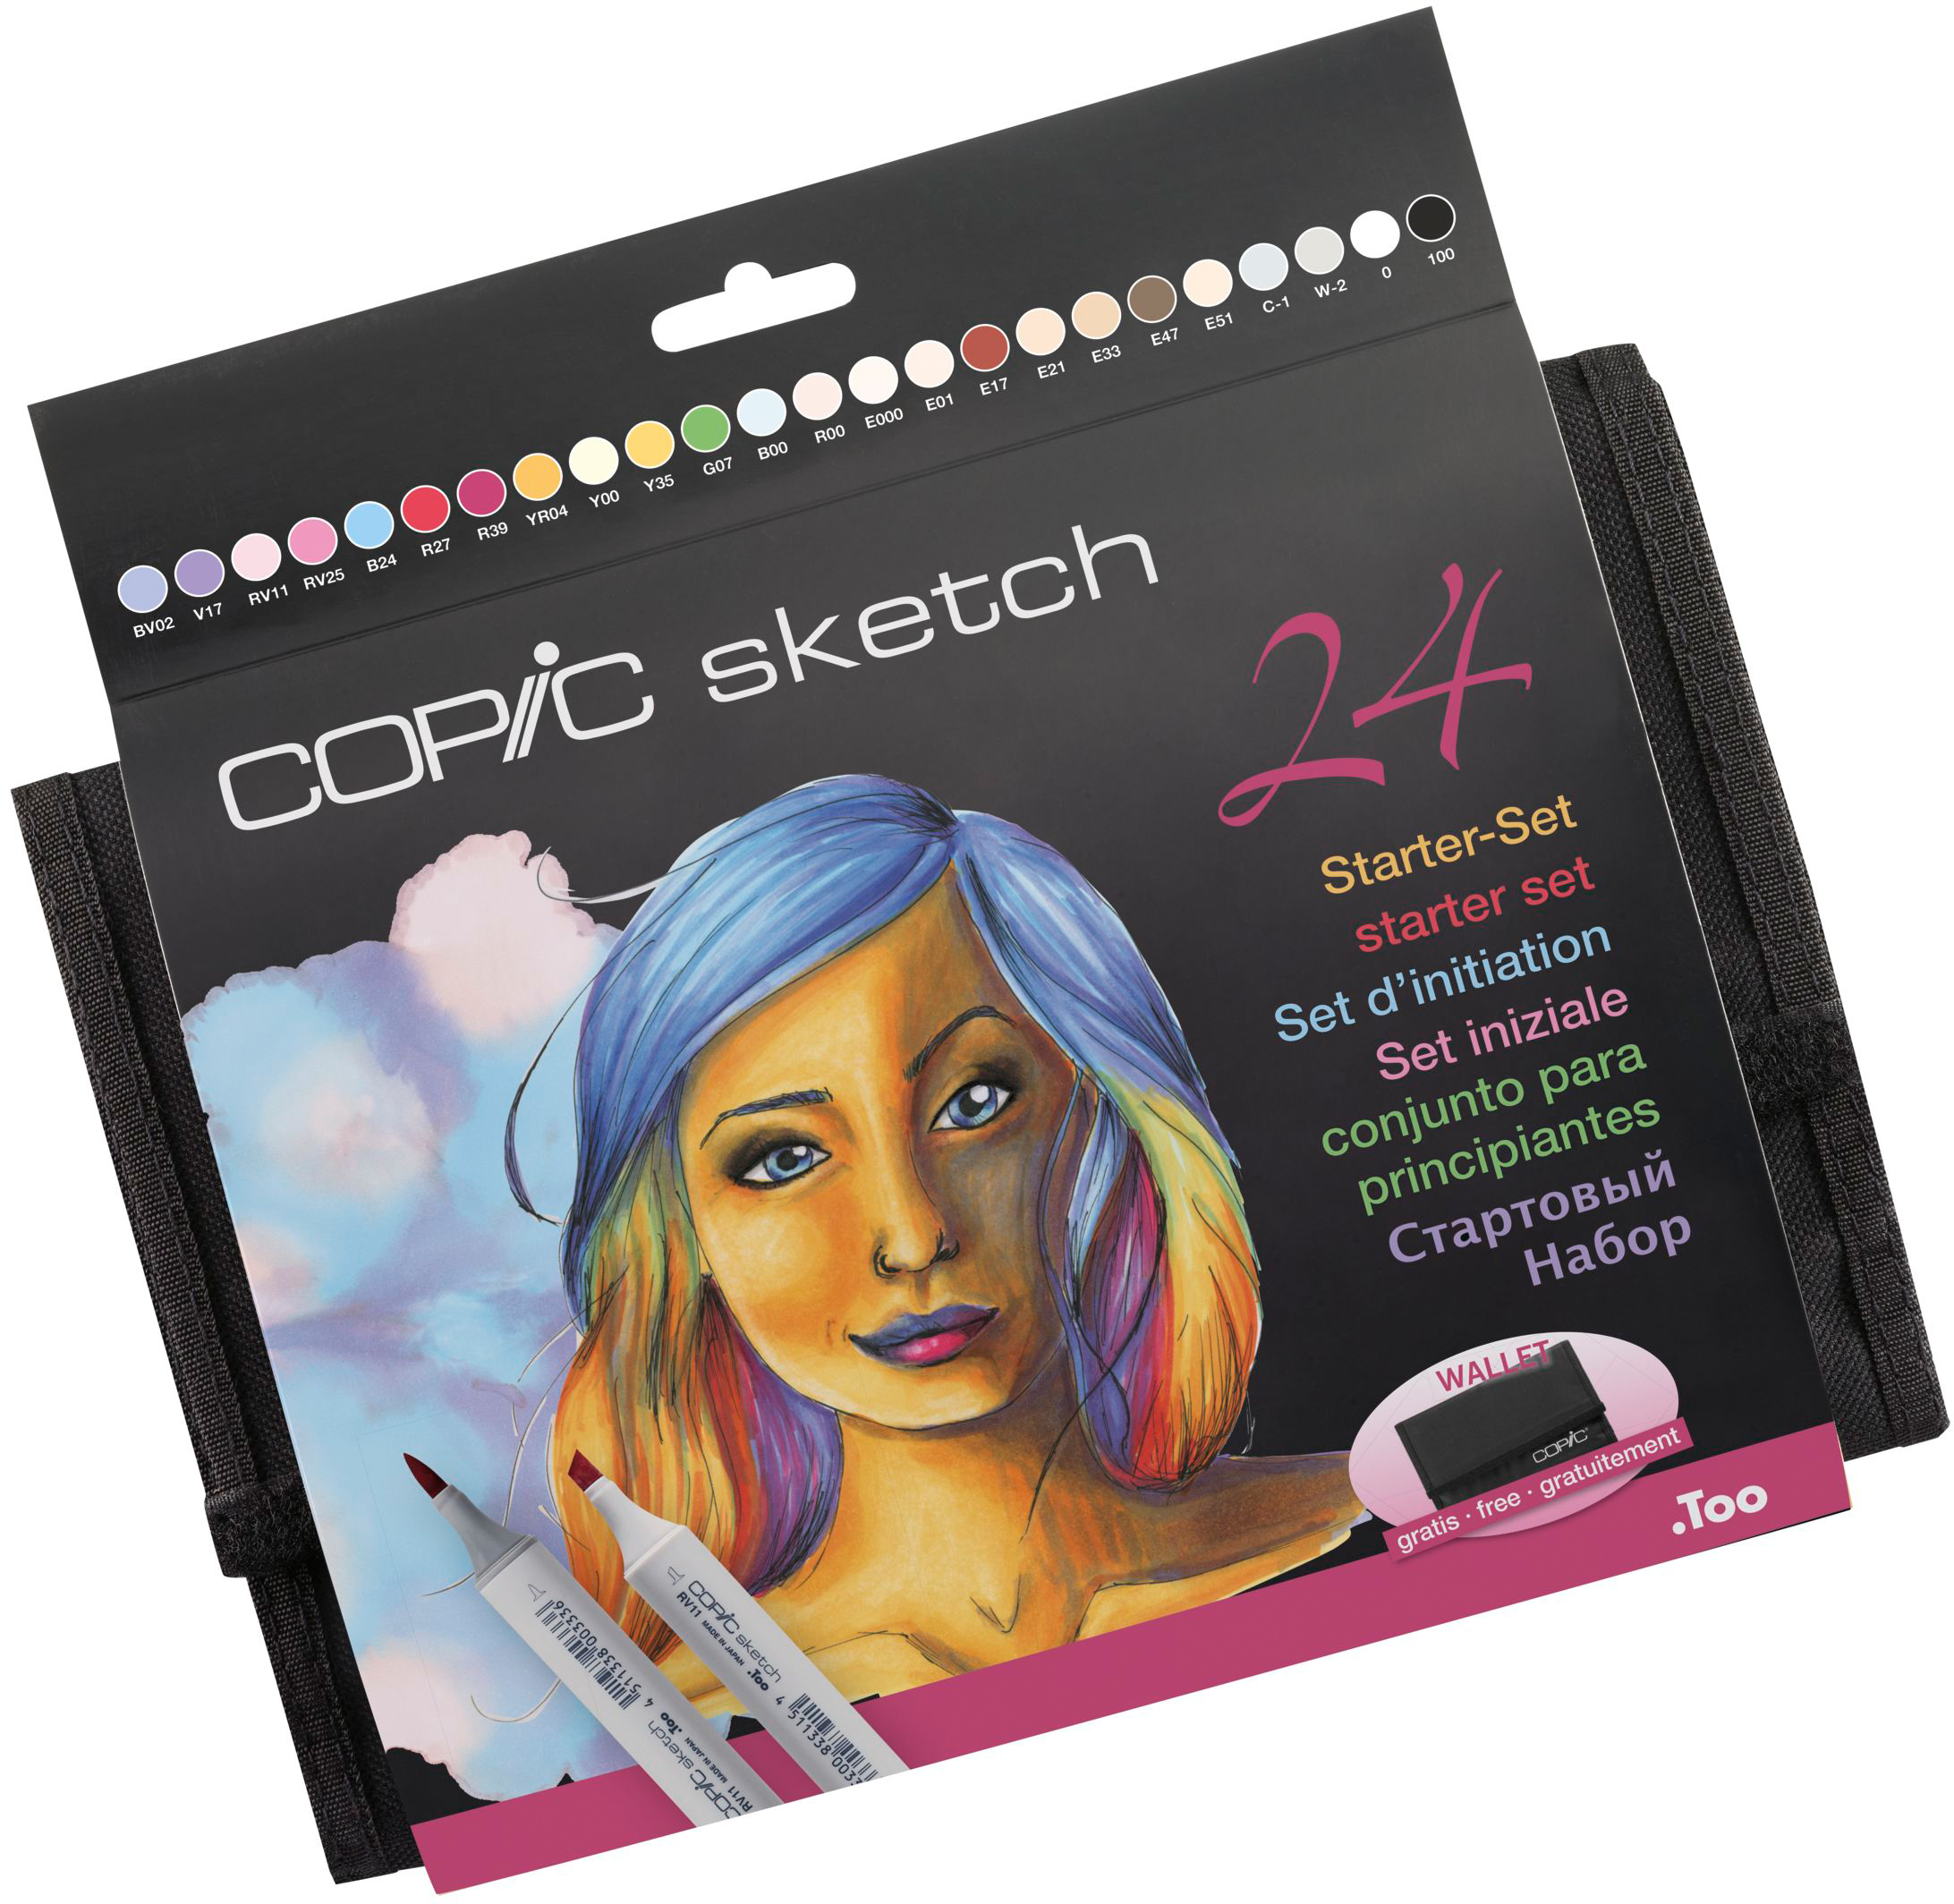 COPIC Marker Sketch 21075424 Wallet Starter-Set, 24 pcs. Wallet Starter-Set, 24 pcs.